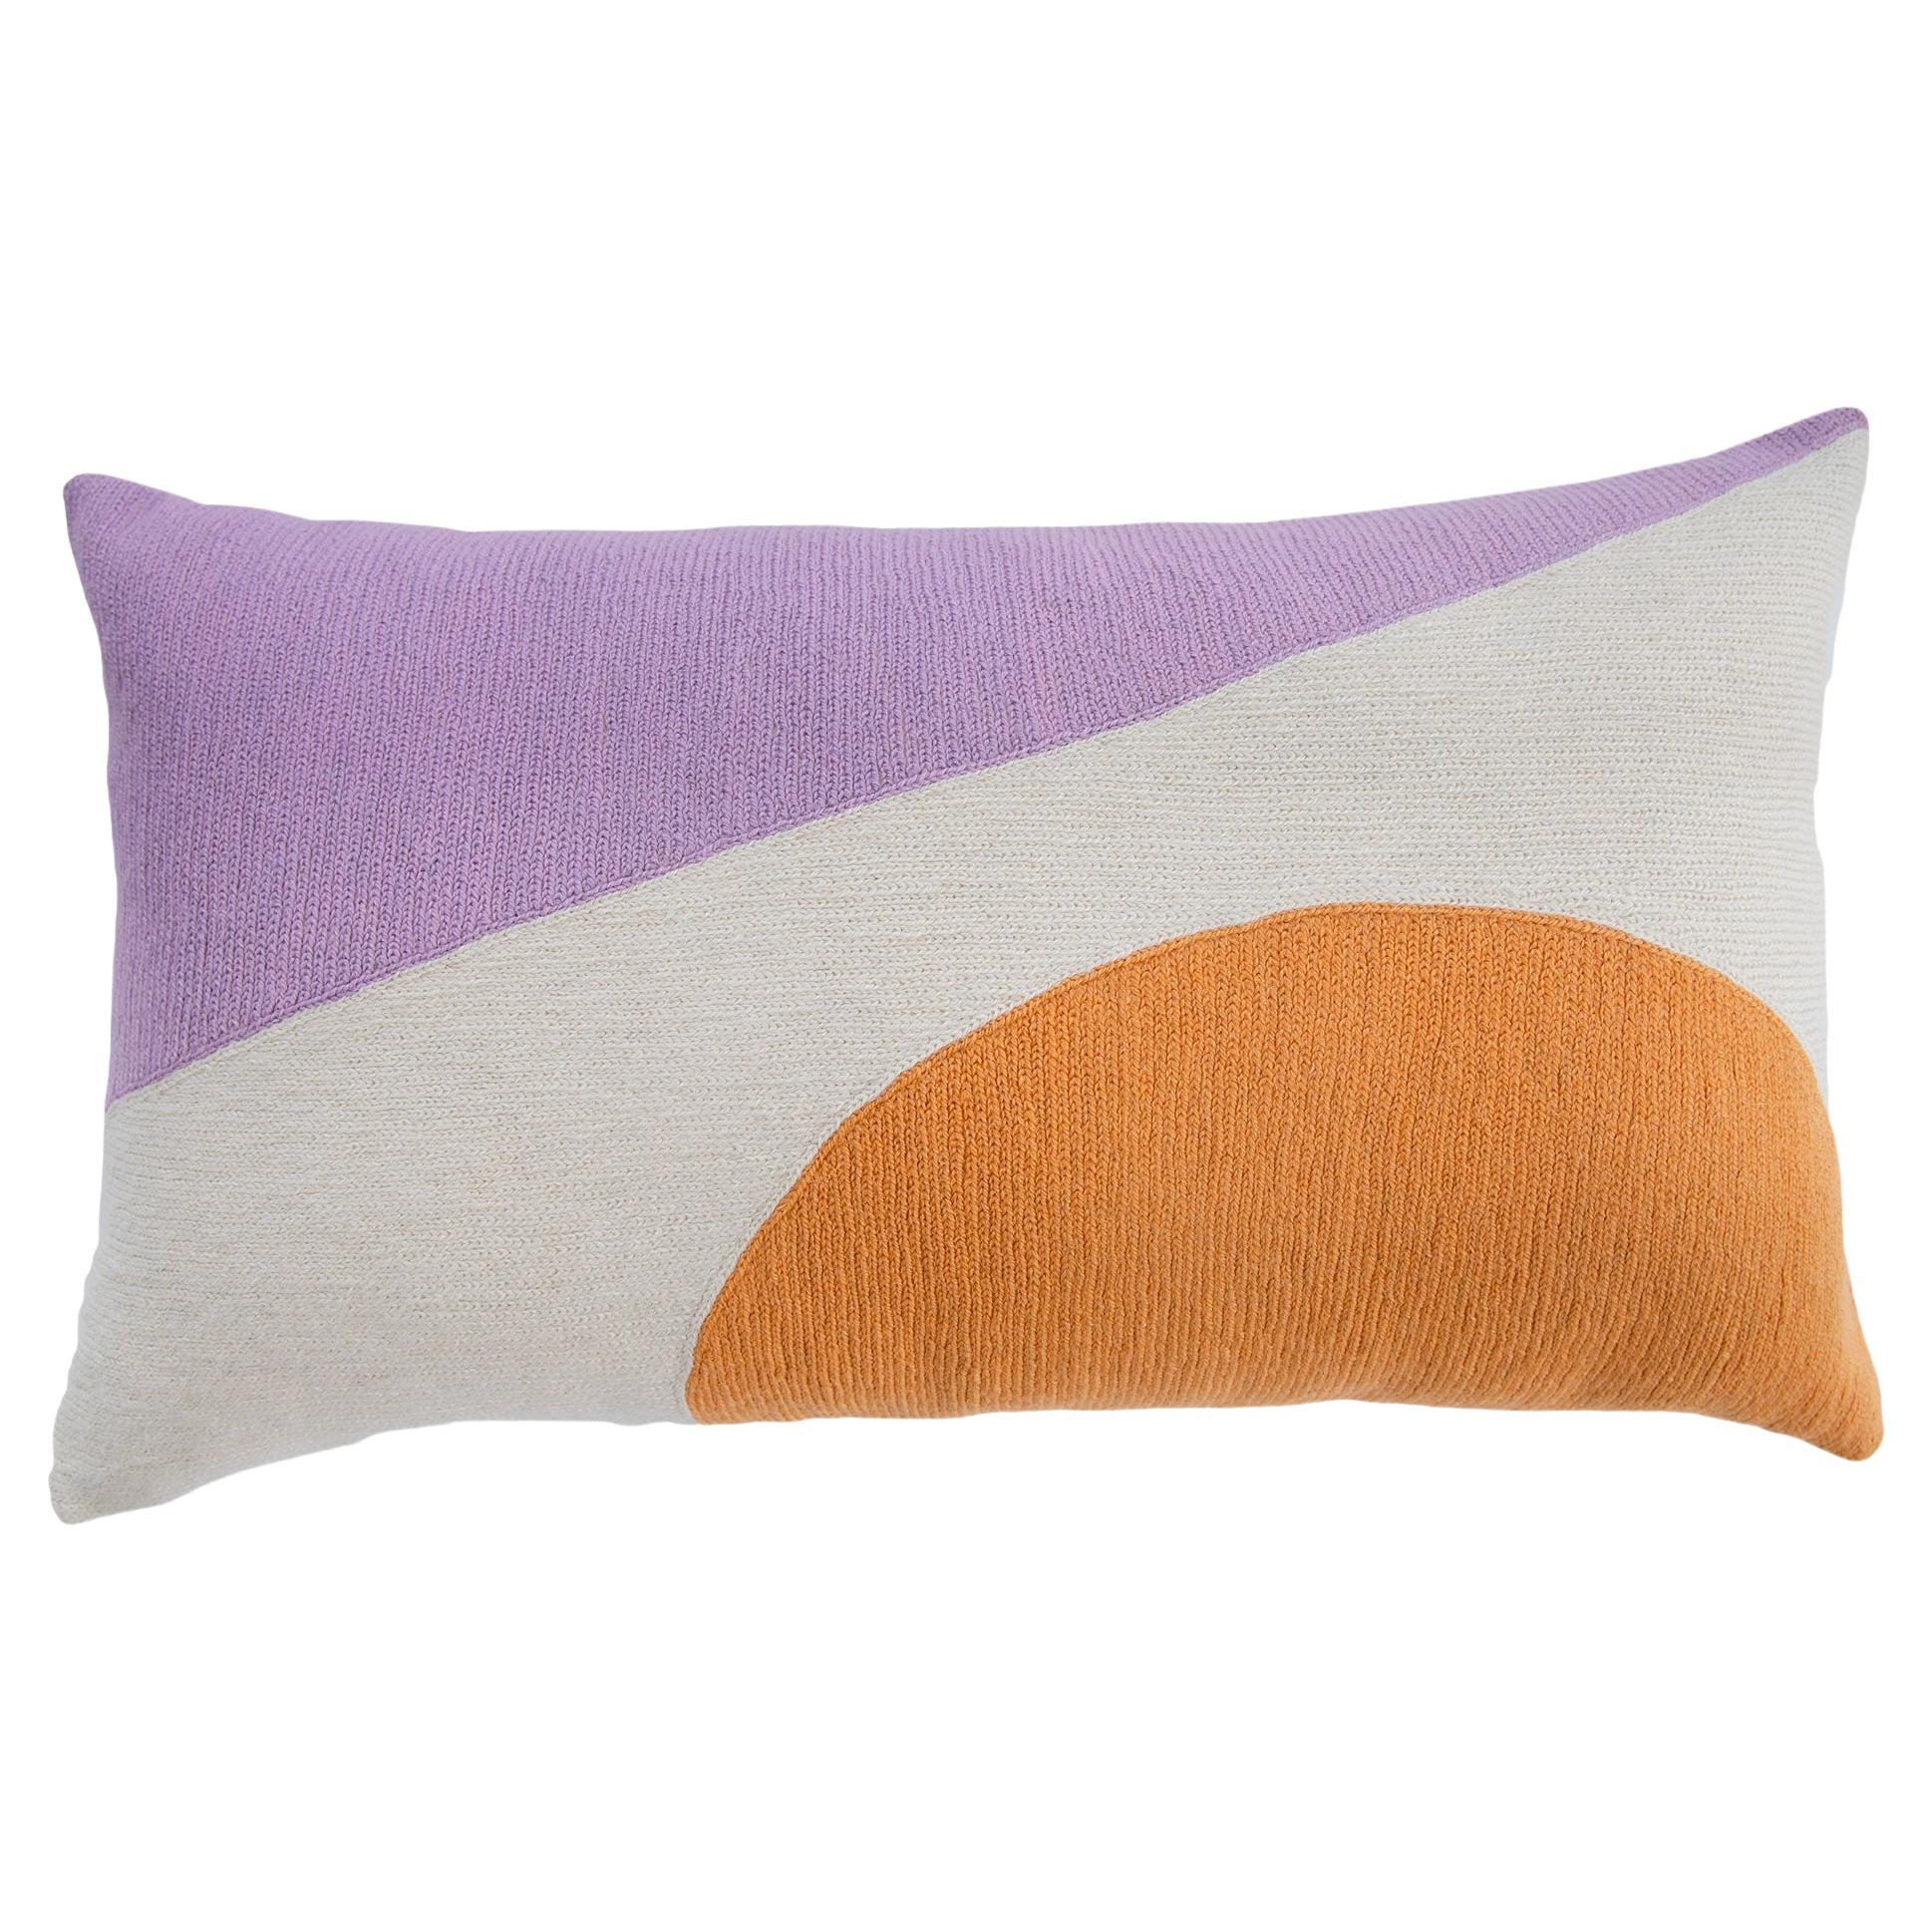 Zaza Colorblock Pillow For Sale